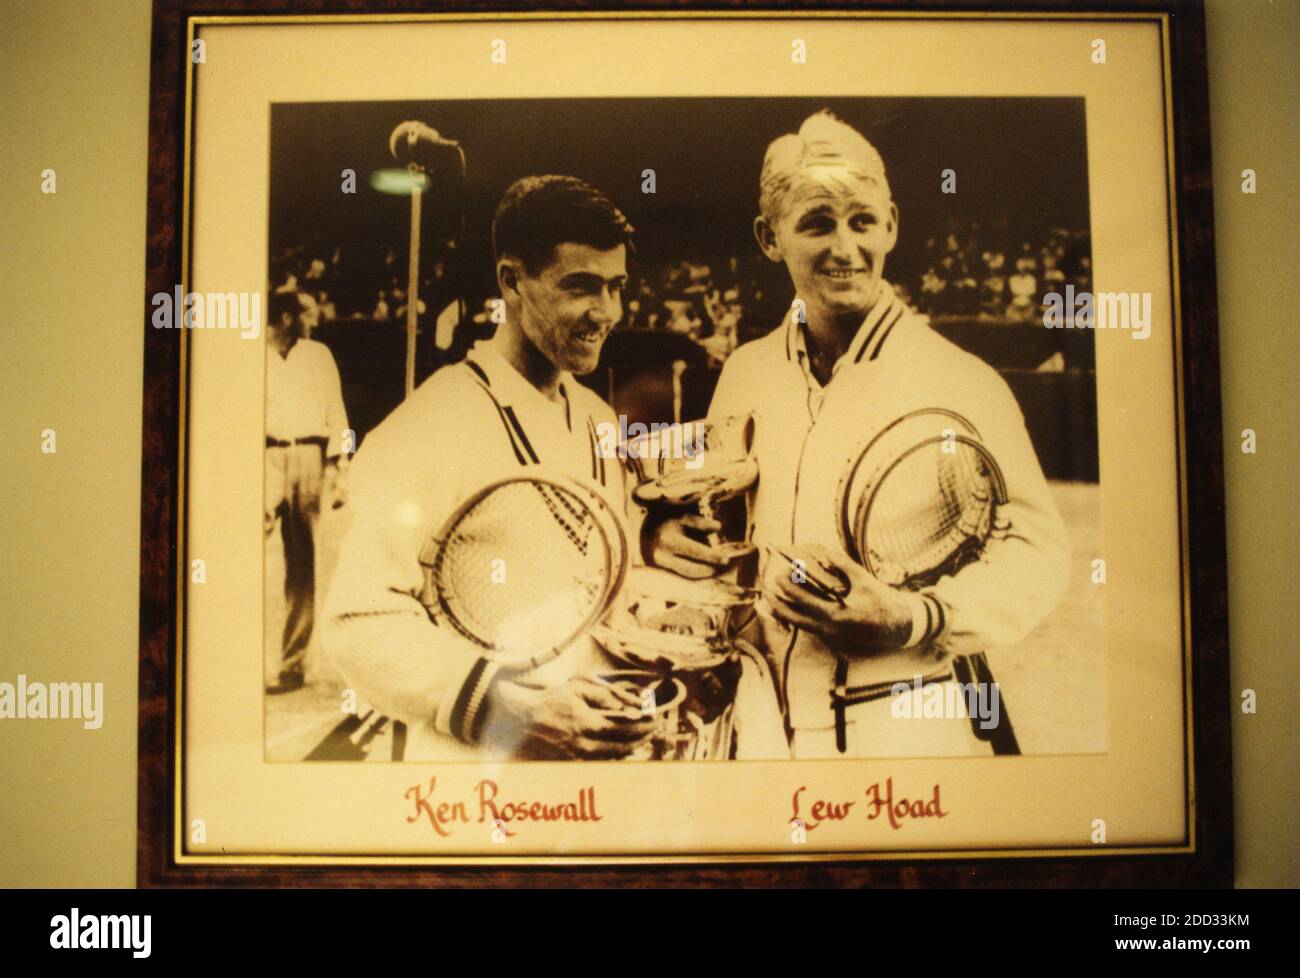 Photo encadrée des joueurs de tennis australiens Ken Rosewall et Lew Hoad encadrée au Kooyong Lawn tennis Club, Melbourne Park, Australie 2001 Banque D'Images